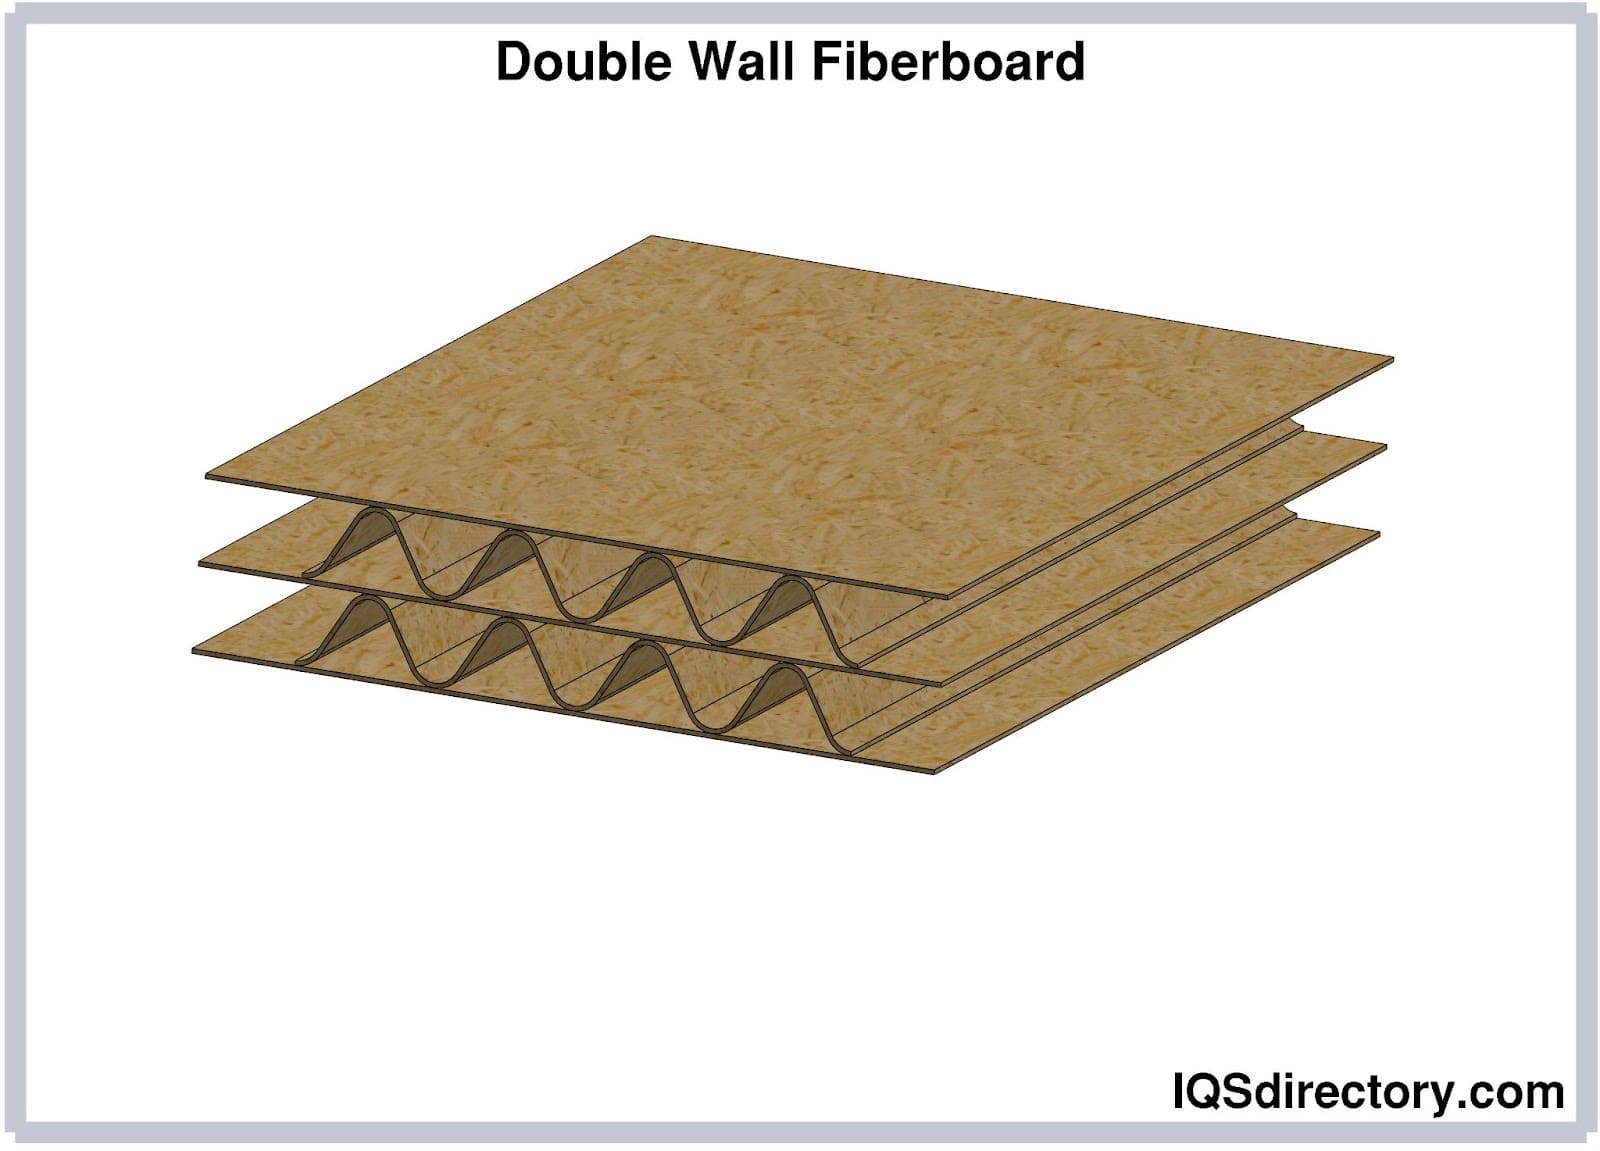 Double Wall Fiberboard